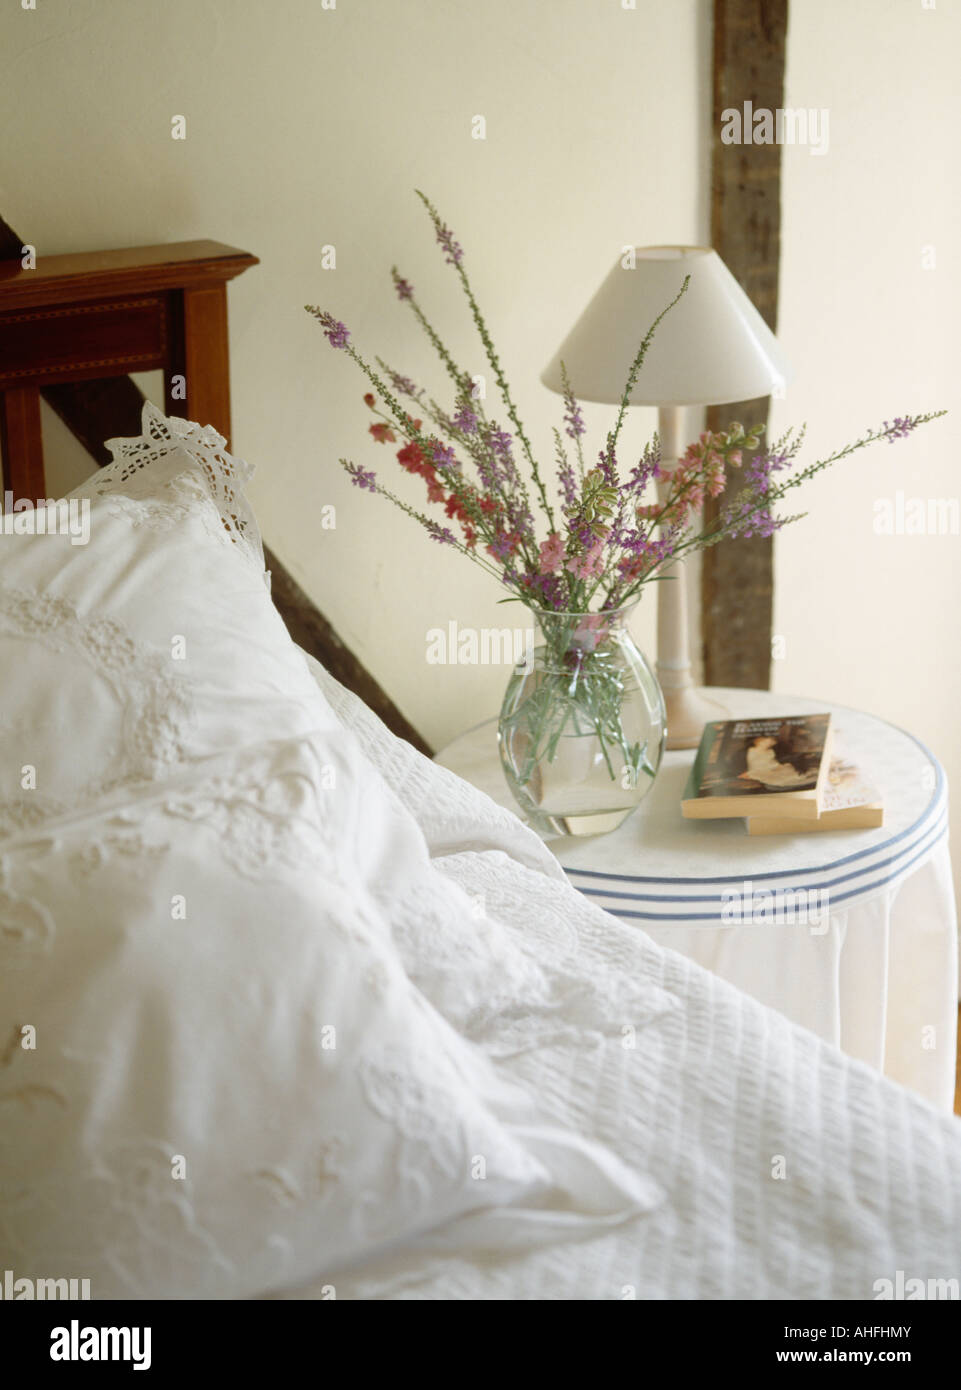 Lampada bianca e fiori freschi in vaso di vetro sul comodino accanto al letto con il bianco broderie anglaise cuscini Foto Stock